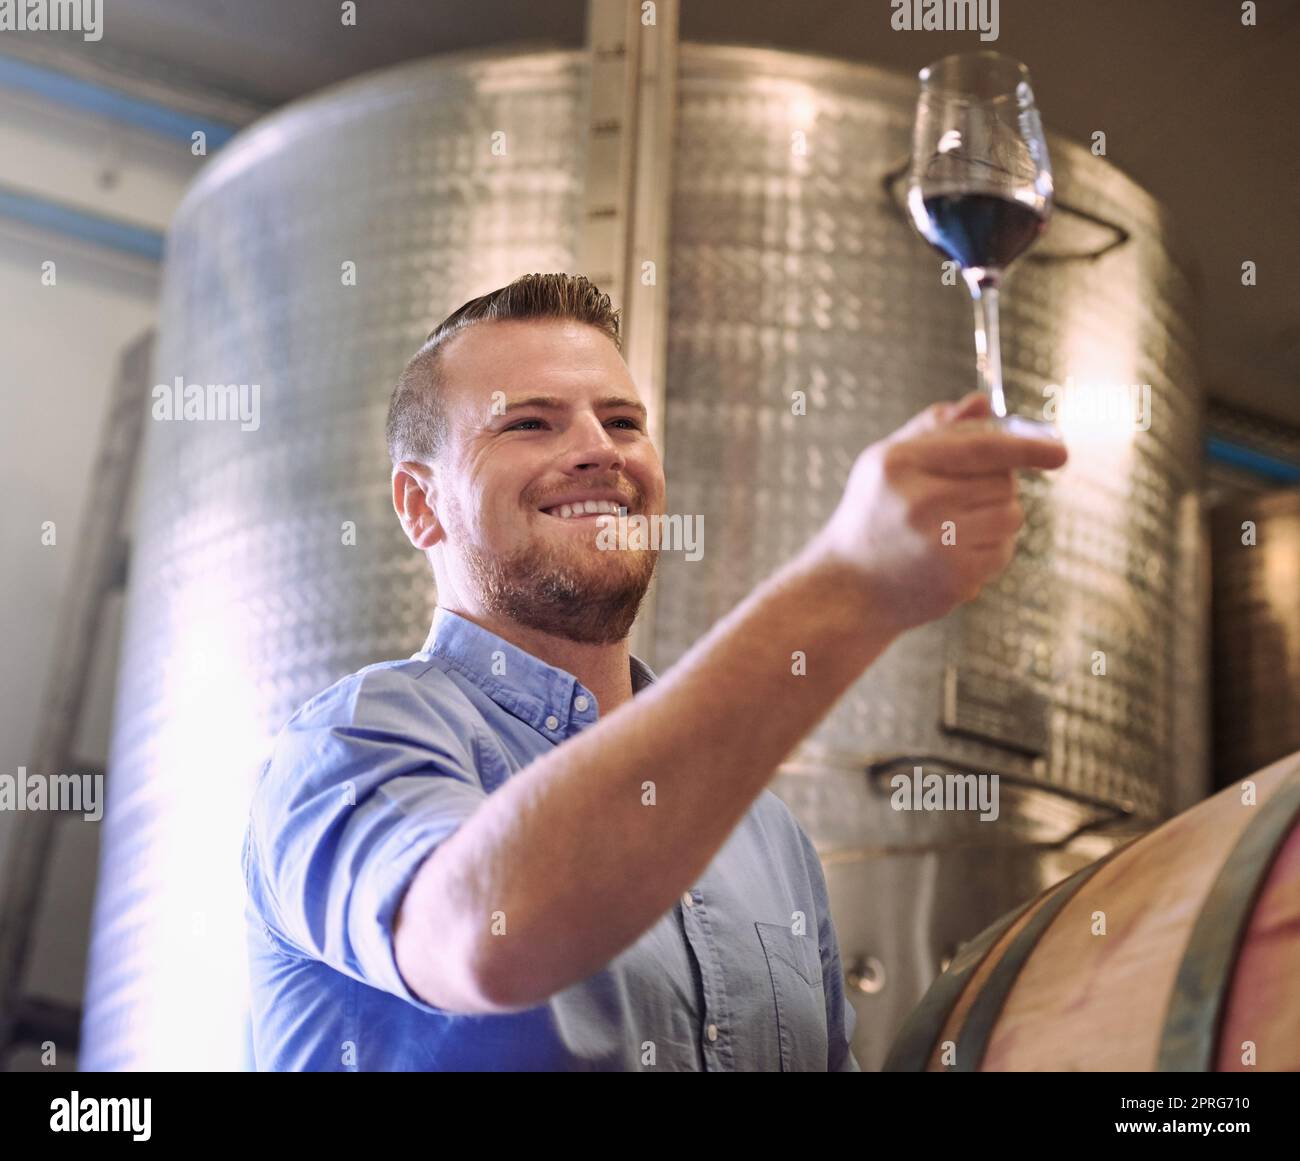 Produrre grandi vini con metodi viticolturali e viticolturali tradizionali e naturali, un uomo che si diverti a degustare vini in distilleria. Foto Stock